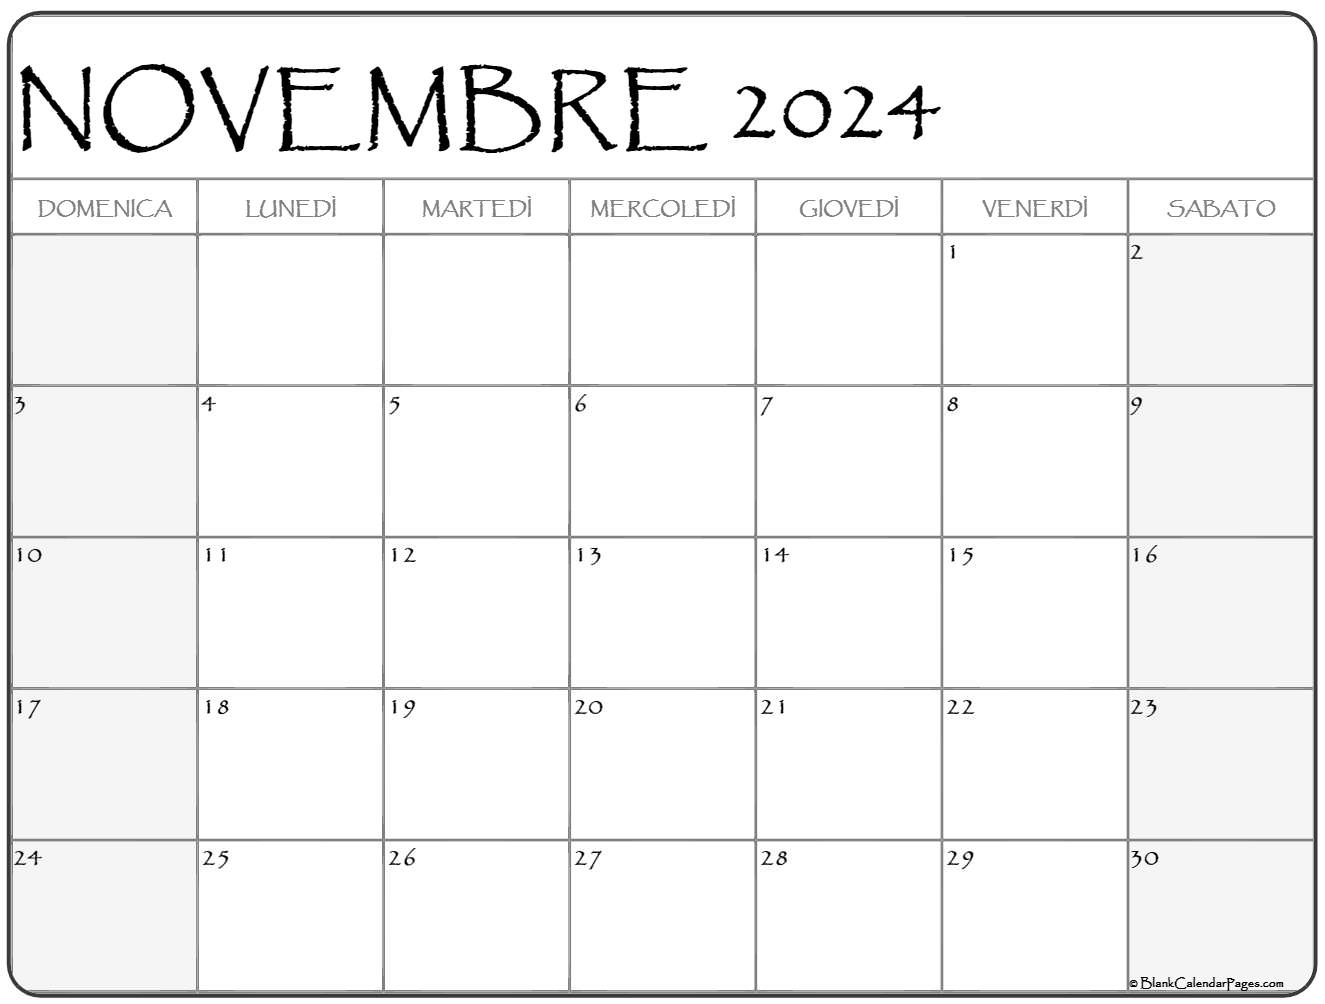 novembre 2024 calendario gratis italiano Calendario novembre